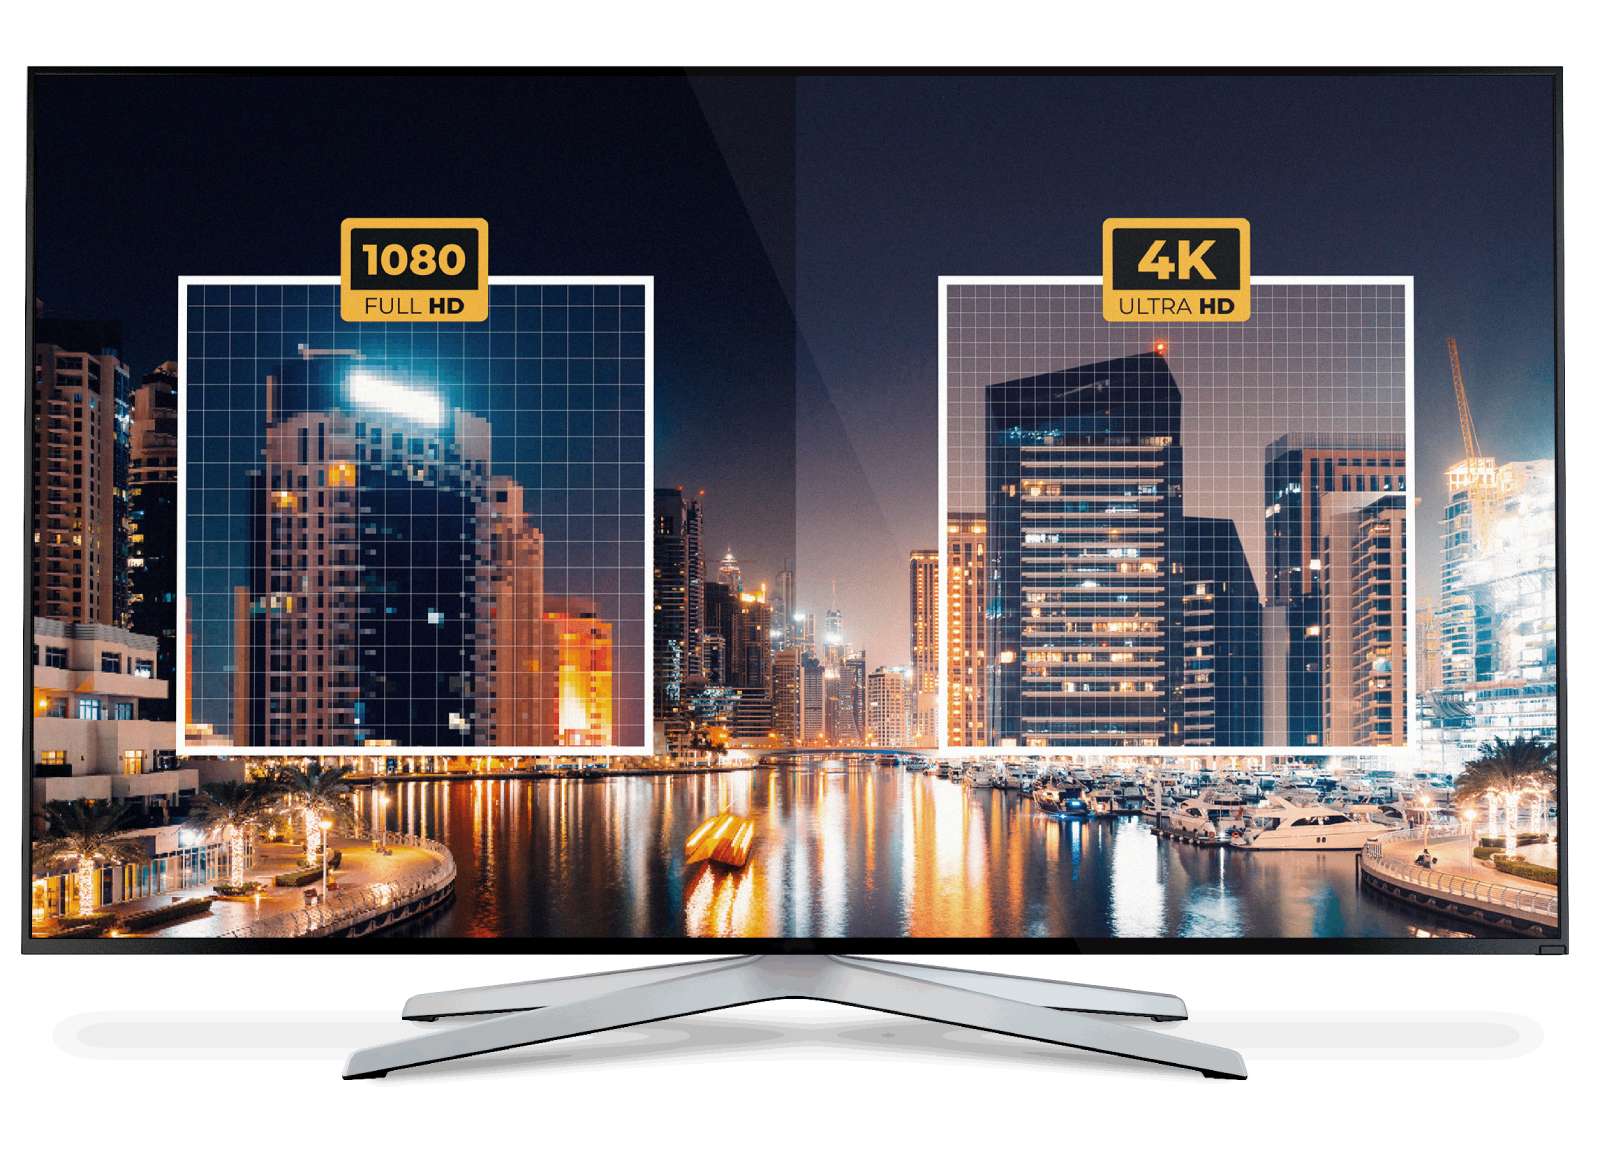 Что лучше 4K или HD? Сравнение Full HD и 4K технологий